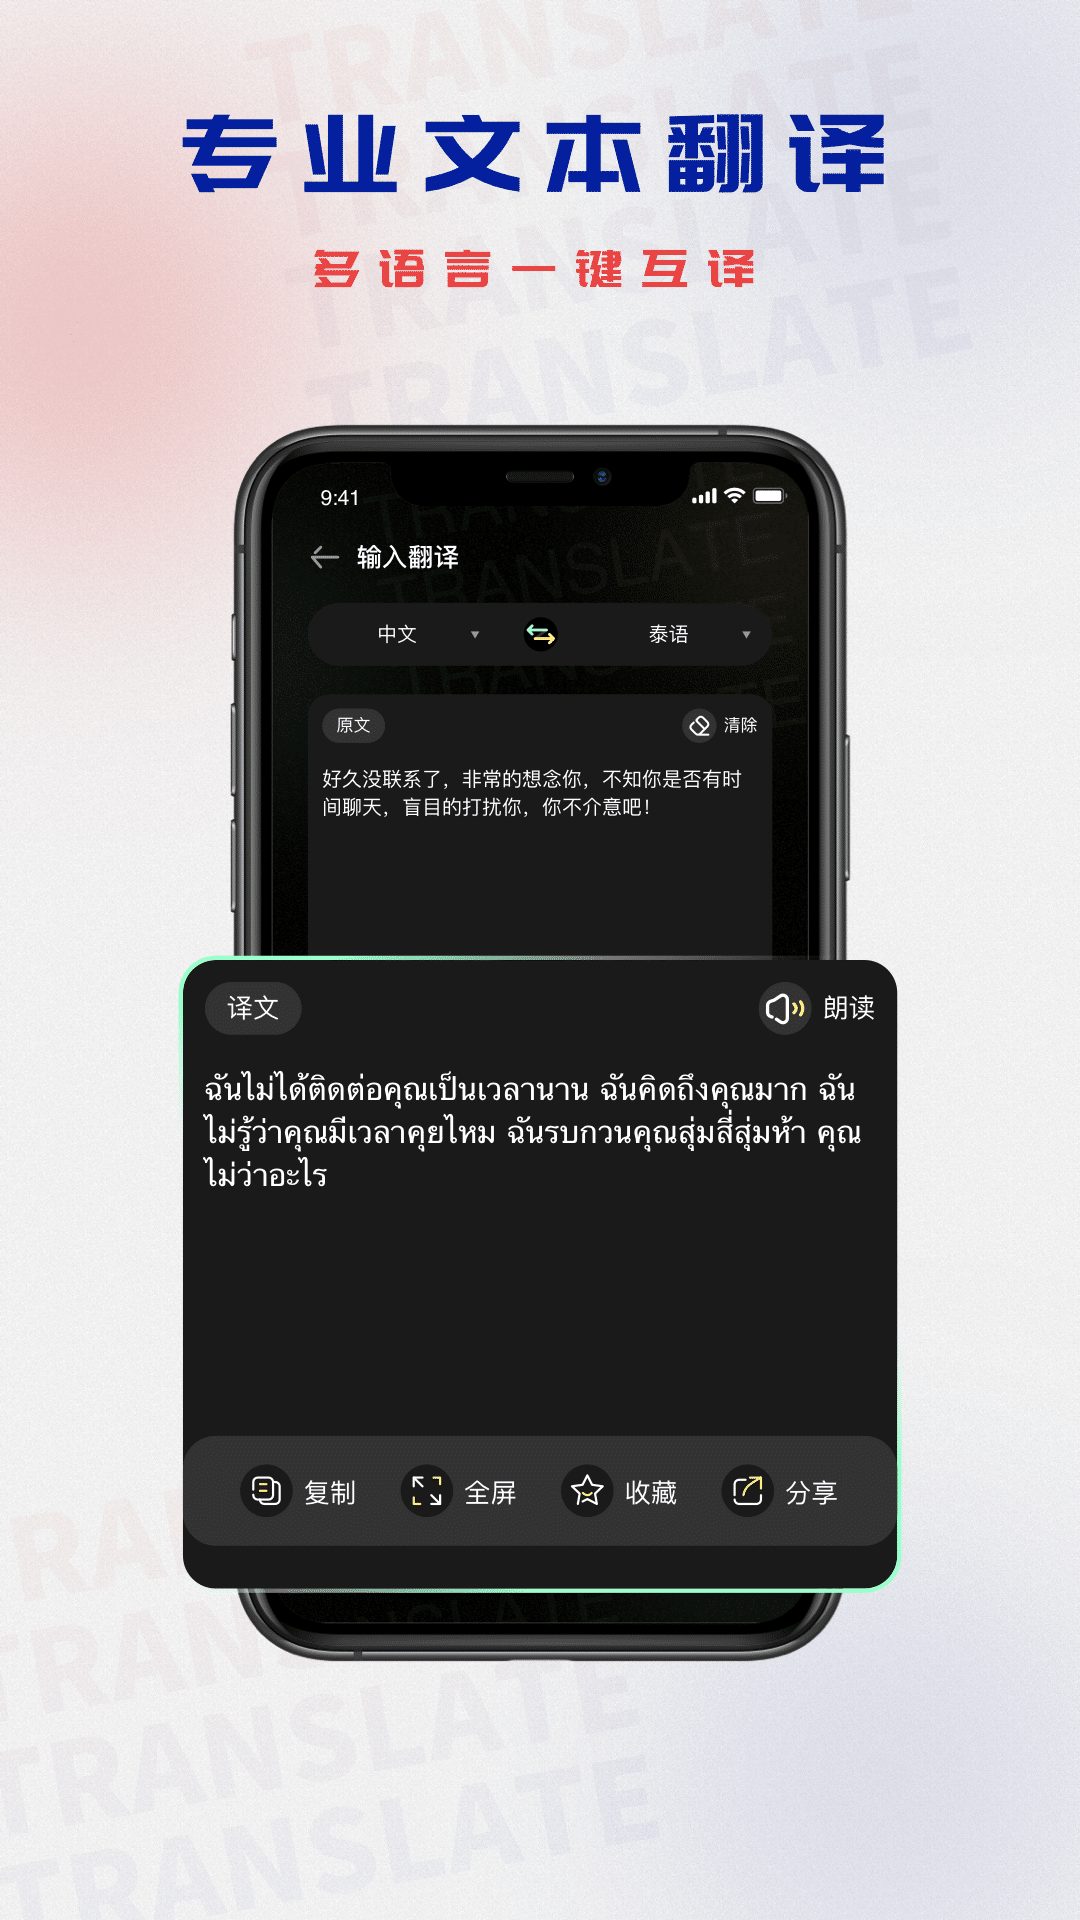 哪些好用的泰语翻译软件？ - 知乎